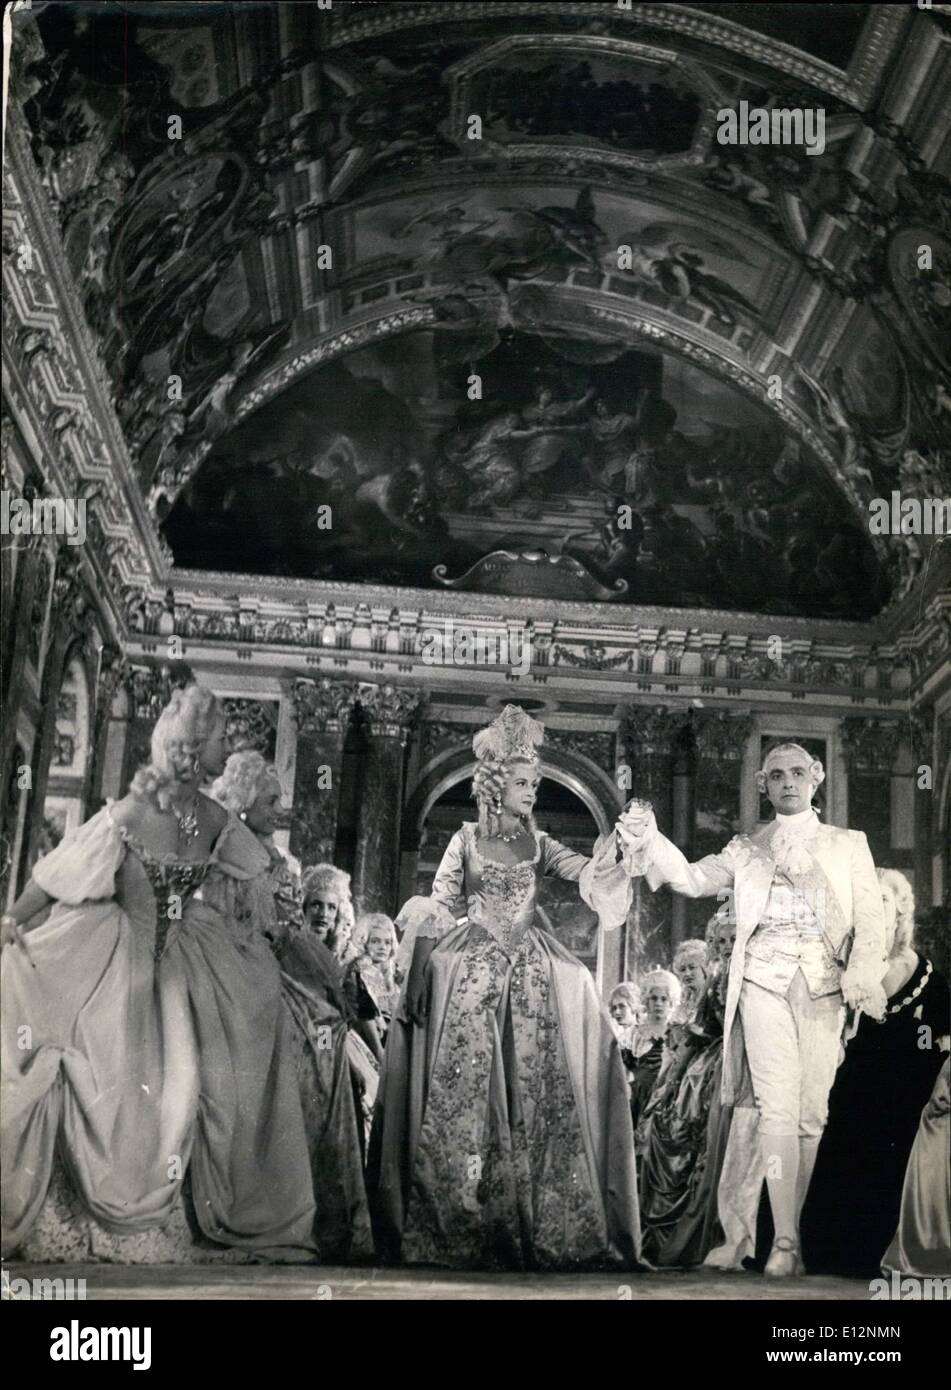 24 février 2012 - Sacha Guitry fait revivre l'histoire de Versailles. Une scène du nouveau film produit par Sacha Guitry évoquant la glorieuse histoire de Versailles. Louis XVI (Gilbert Boka) et Marie Antoinette (Lama Marconi) sont considérées ici dans l'un cadre de la salle des miroirs. 20/53 juillet Banque D'Images